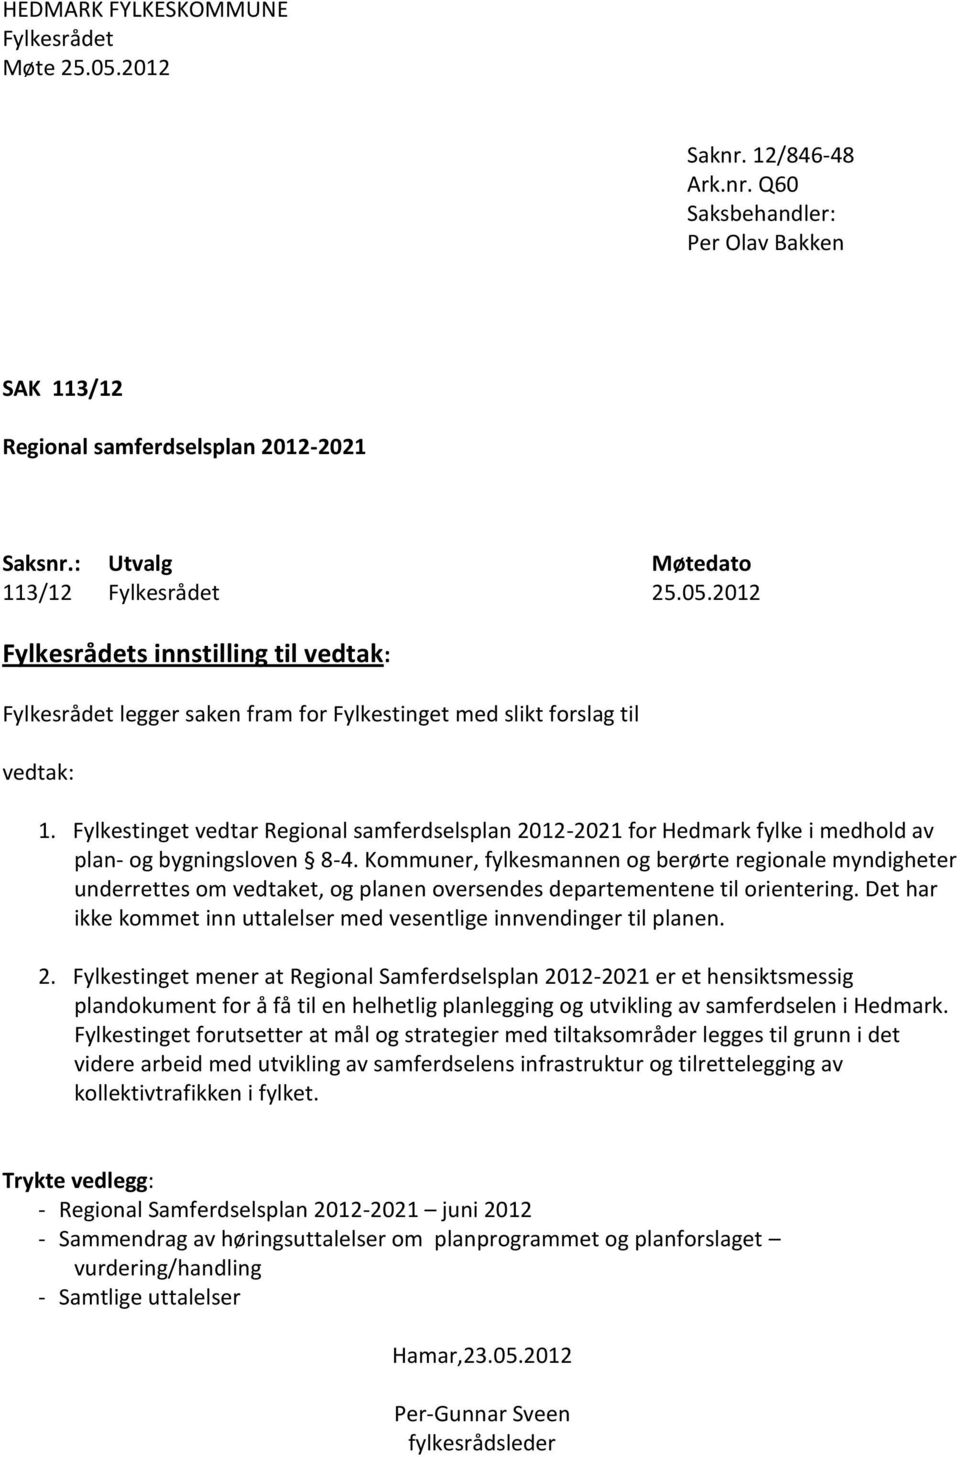 Fylkestinget vedtar Regional samferdselsplan 2012-2021 for Hedmark fylke i medhold av plan- og bygningsloven 8-4.